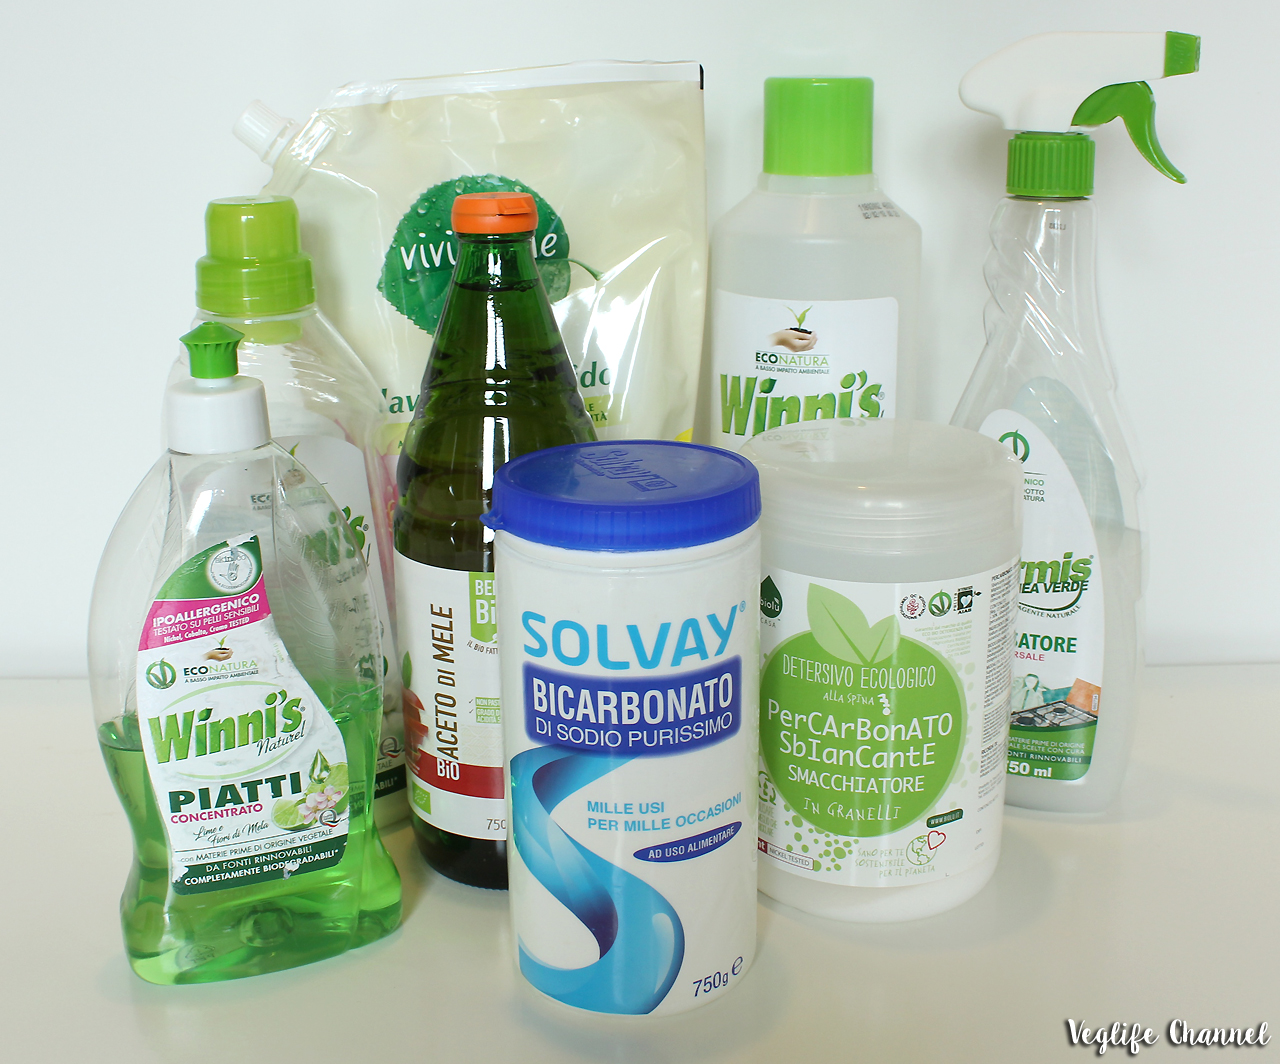 Prodotti ecologici & naturali per la pulizia della casa - Veglife Channel